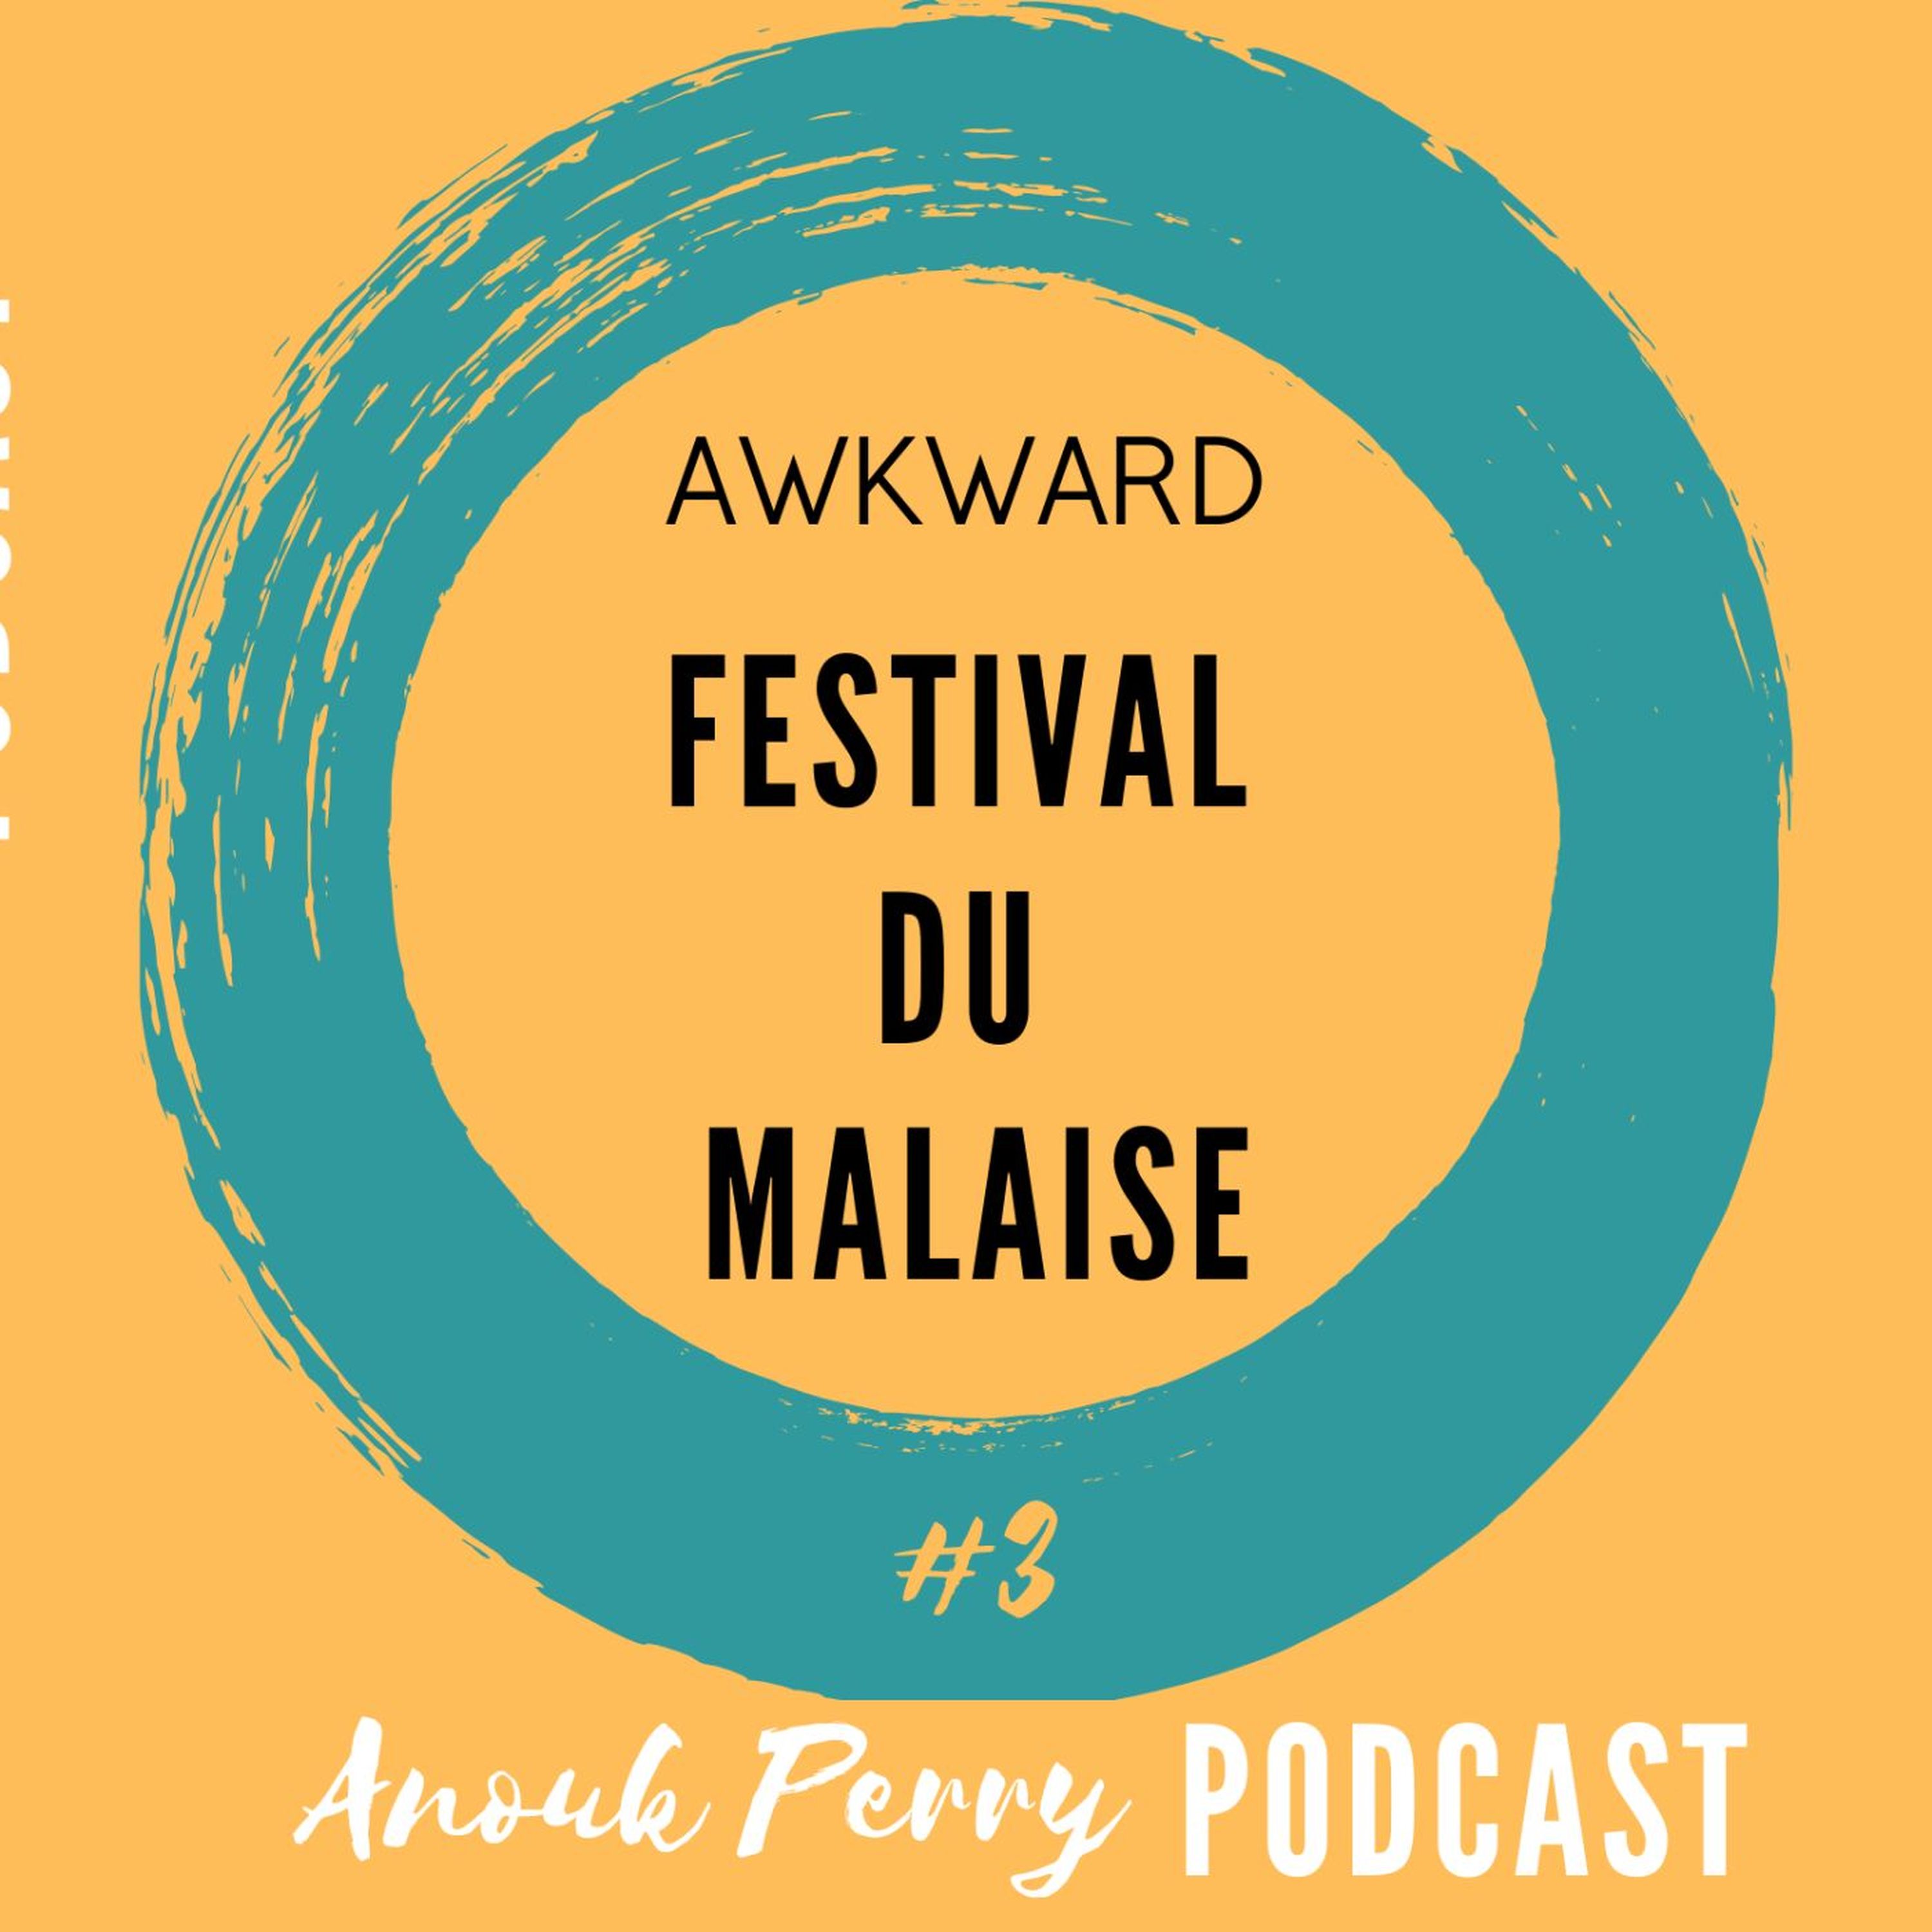 Le festival du malaise — AWKWARD (en anglais)